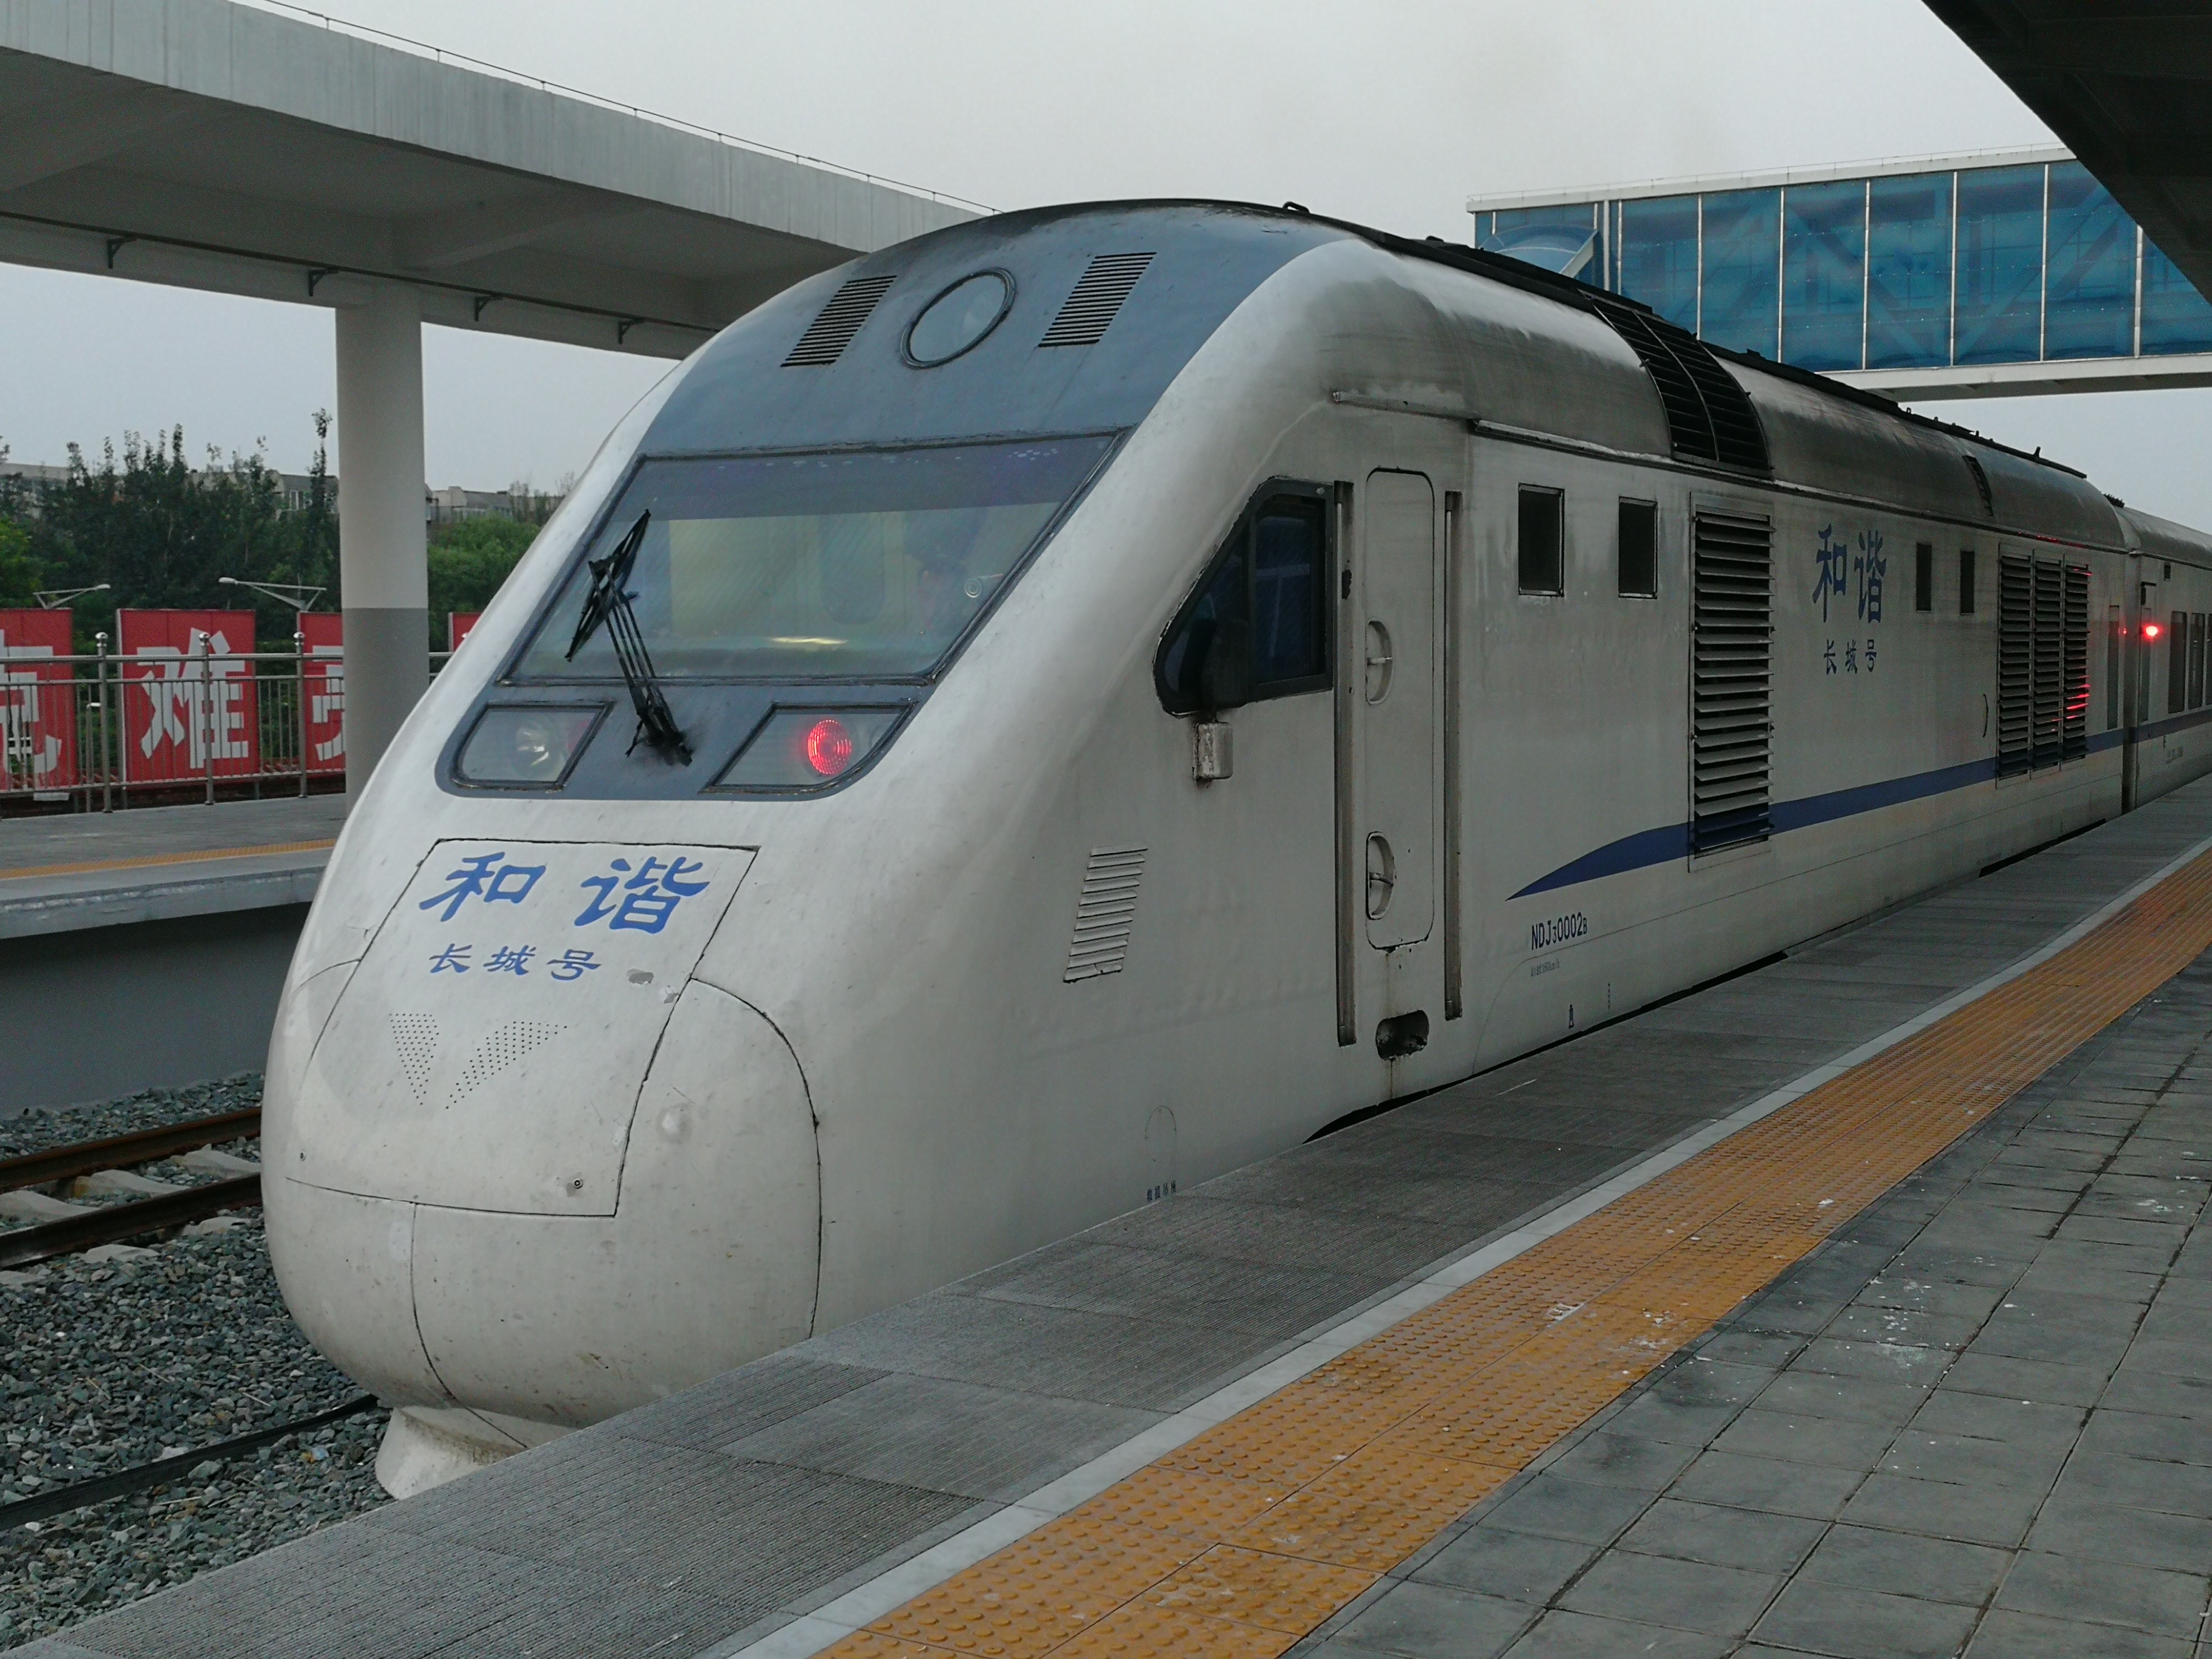 運營在京張鐵路線上的和諧長城號內燃機動車組